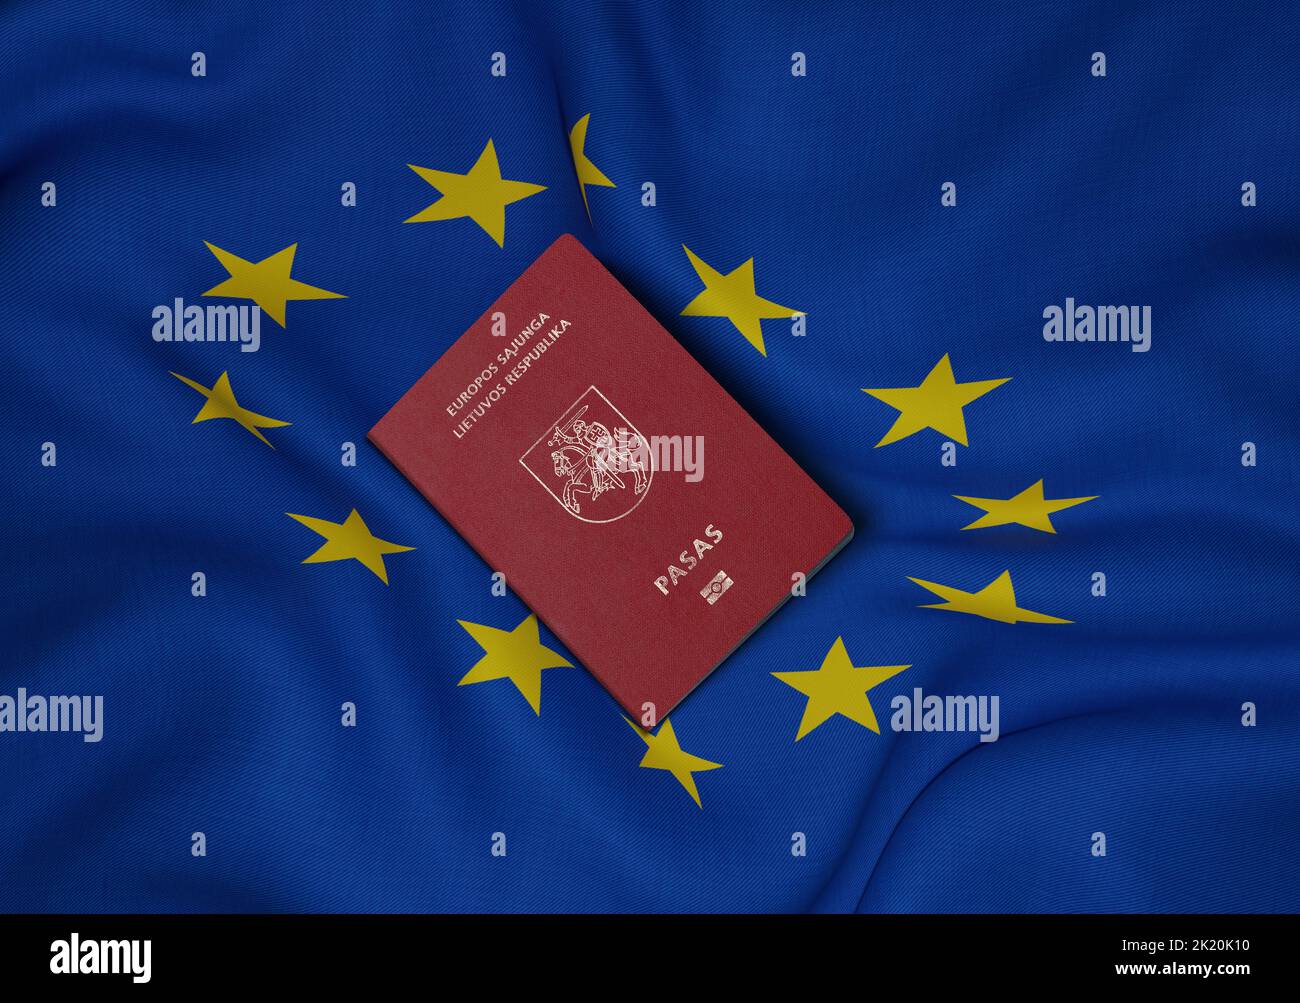 Passaporto lituano sulla bandiera dell'Unione europea, il passaporto lituano è un documento ufficiale, rilasciato esclusivamente ai cittadini lituani per essere in possesso Foto Stock